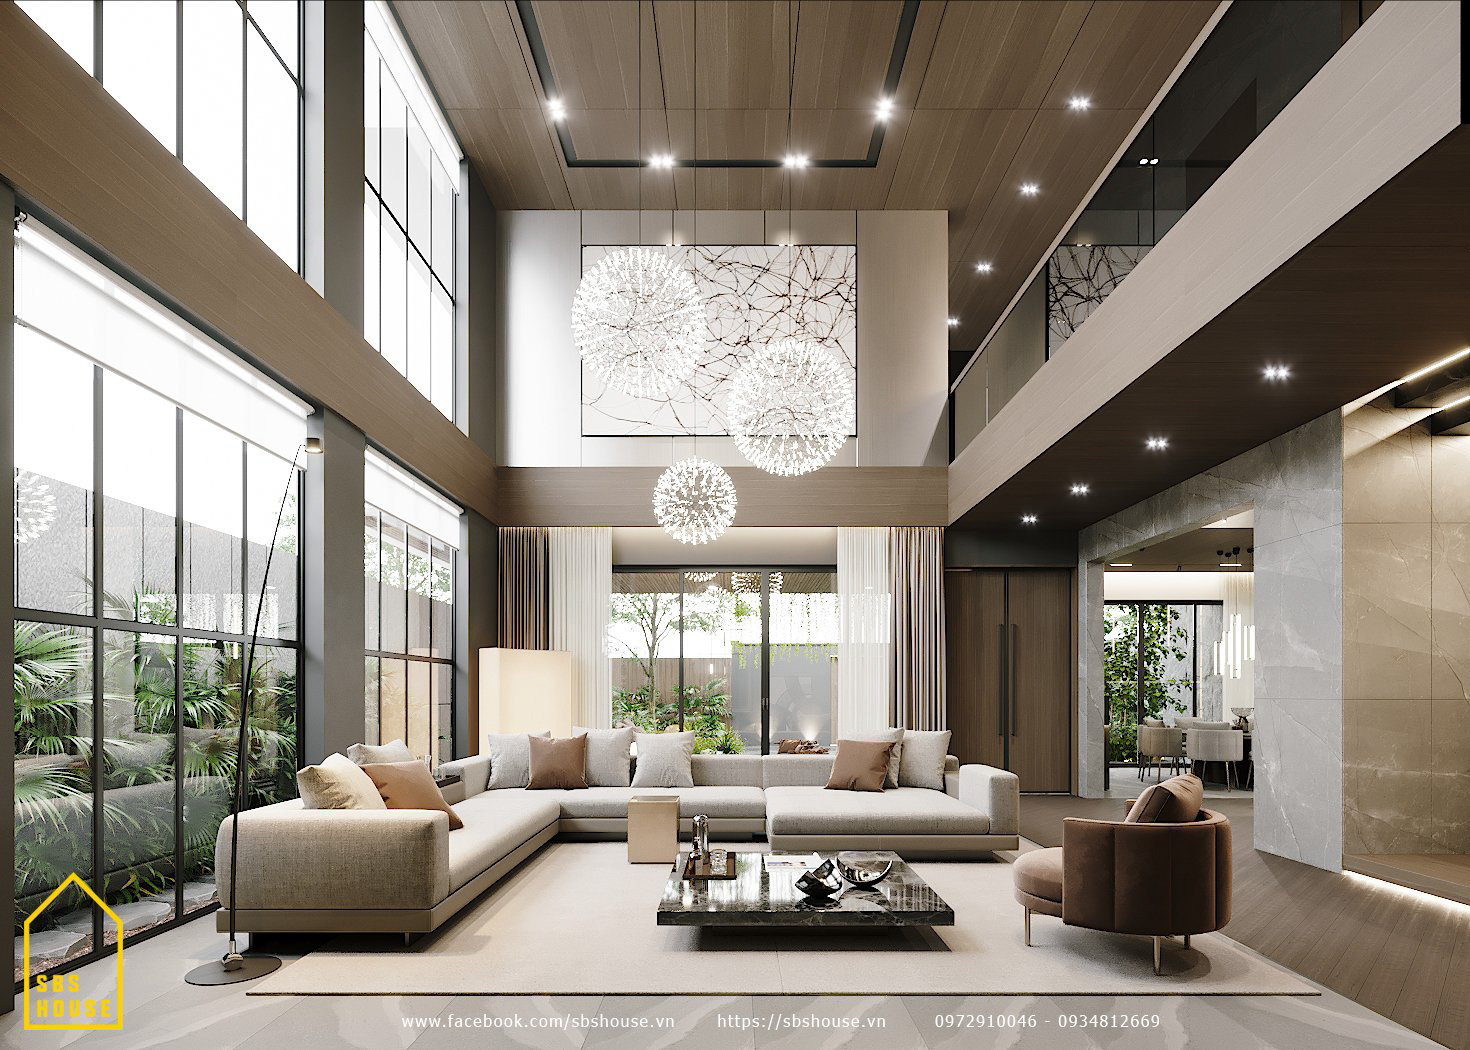 20 ý tưởng thiết kế nội thất phòng khách biệt thự sáng tạo 2020  Biệt thự  triệu đô  Nhận mua bán chuyển nhượng biệt thự  liền kề  shophouse